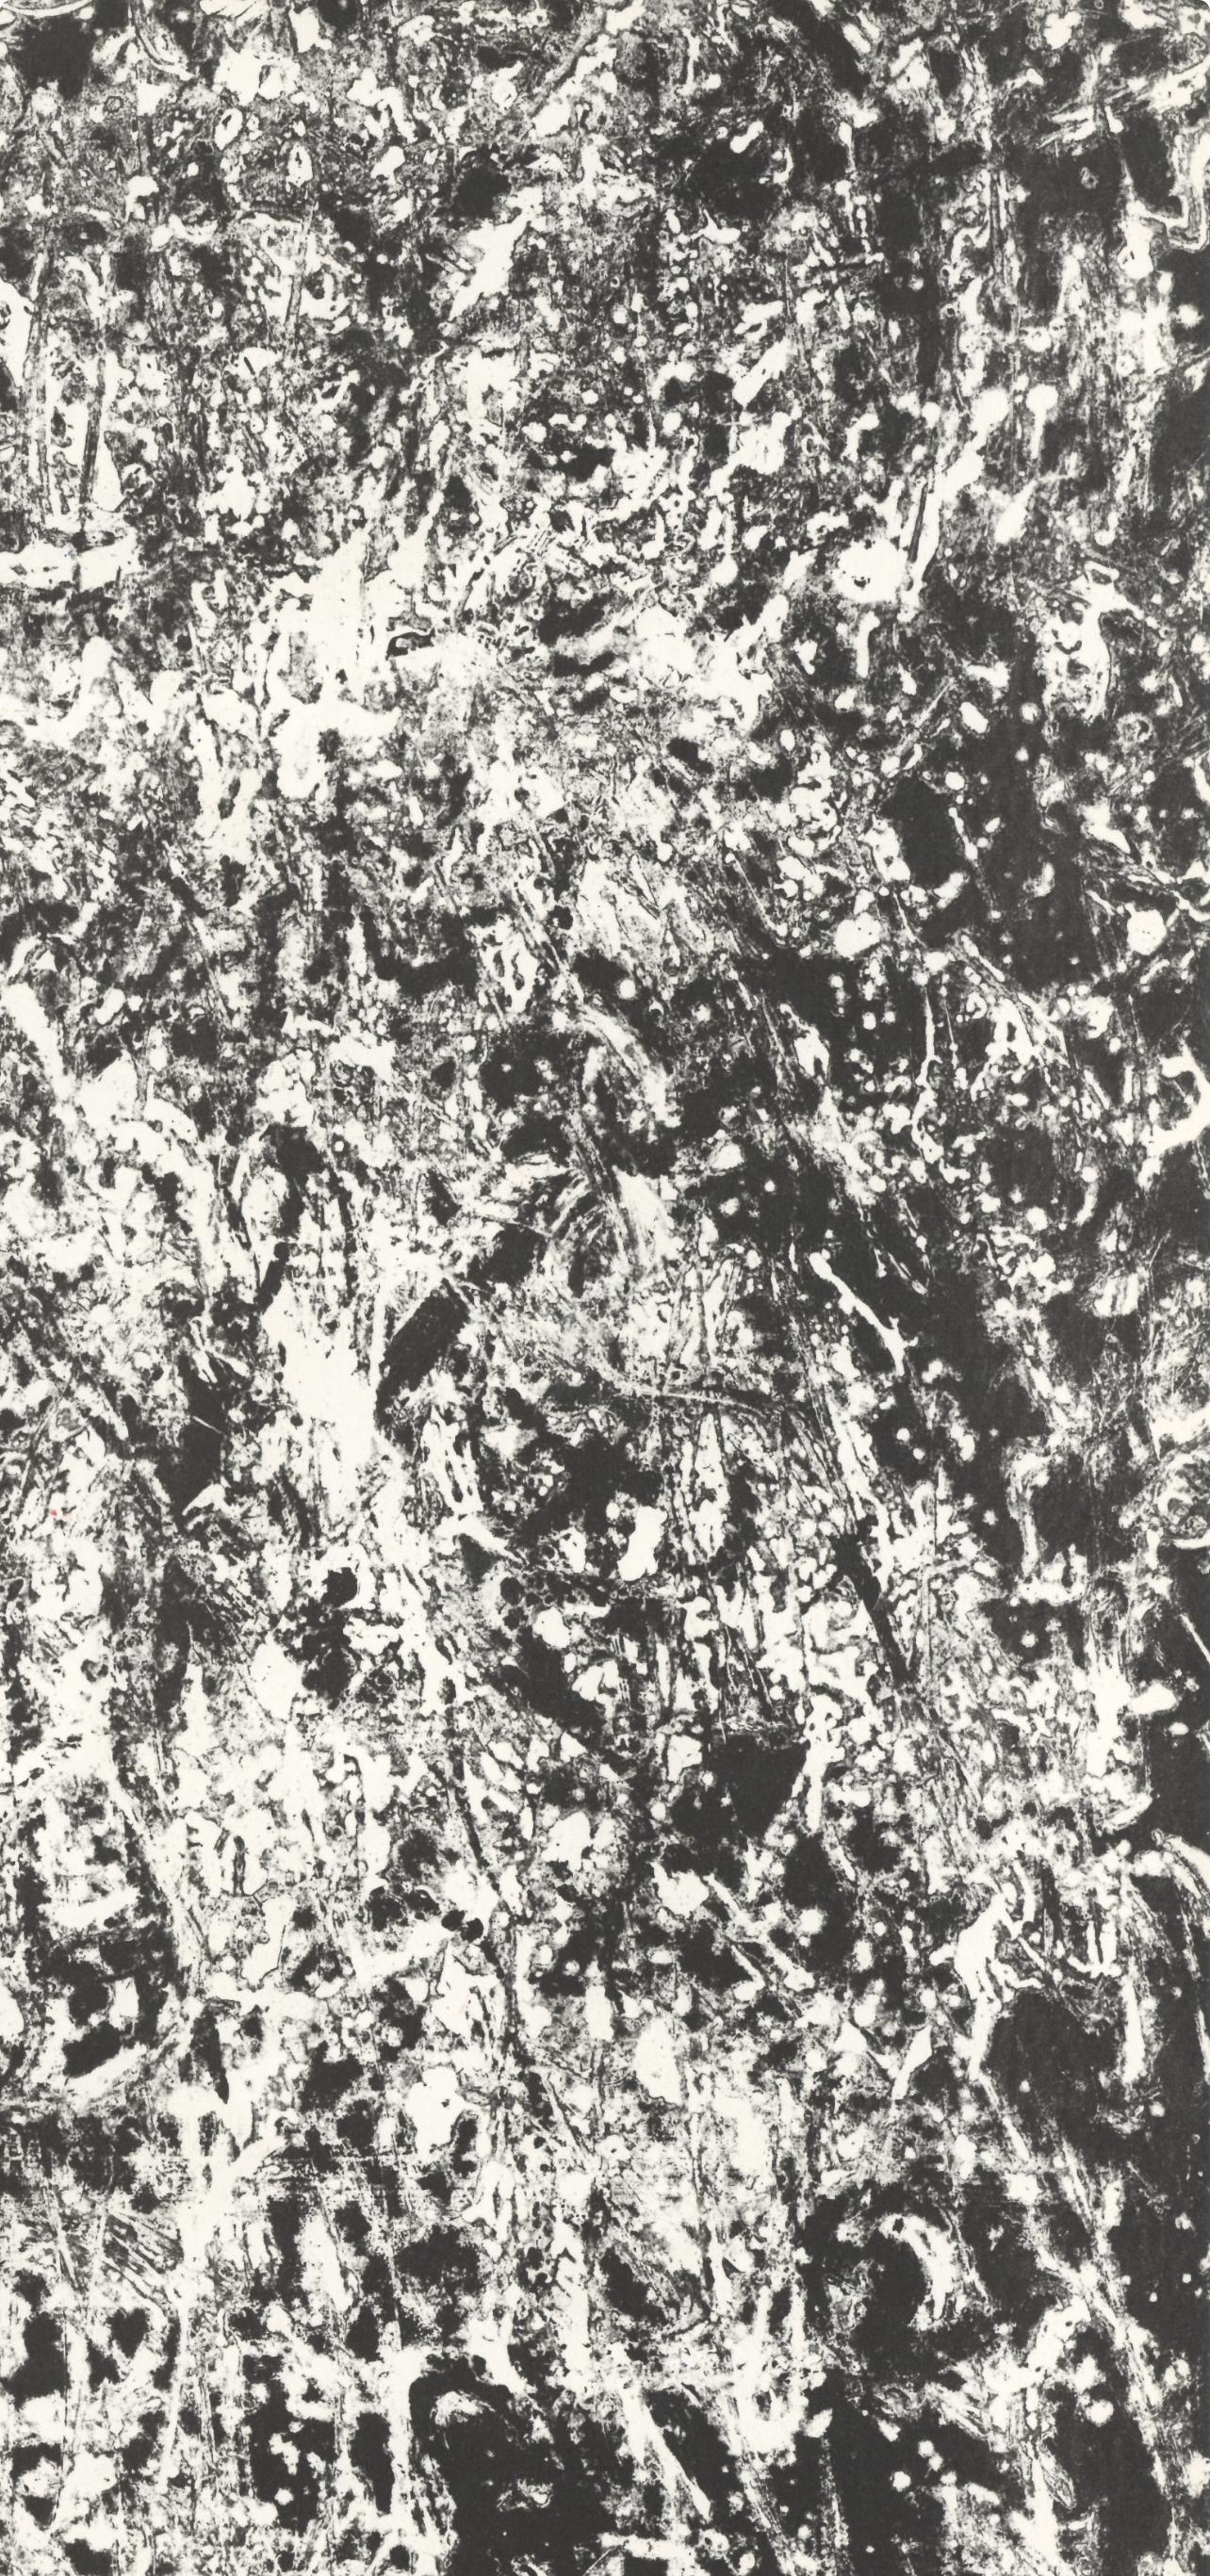 Lithographie auf Velin. Beschriftung: Unsigniert und nicht nummeriert. Guter Zustand. Anmerkungen: Aus Derrière le miroir, N° 121-122, herausgegeben von Derrière le miroir, Paris; gedruckt von Galerie Maeght, Paris, 1960. Auszug aus einem Essay von